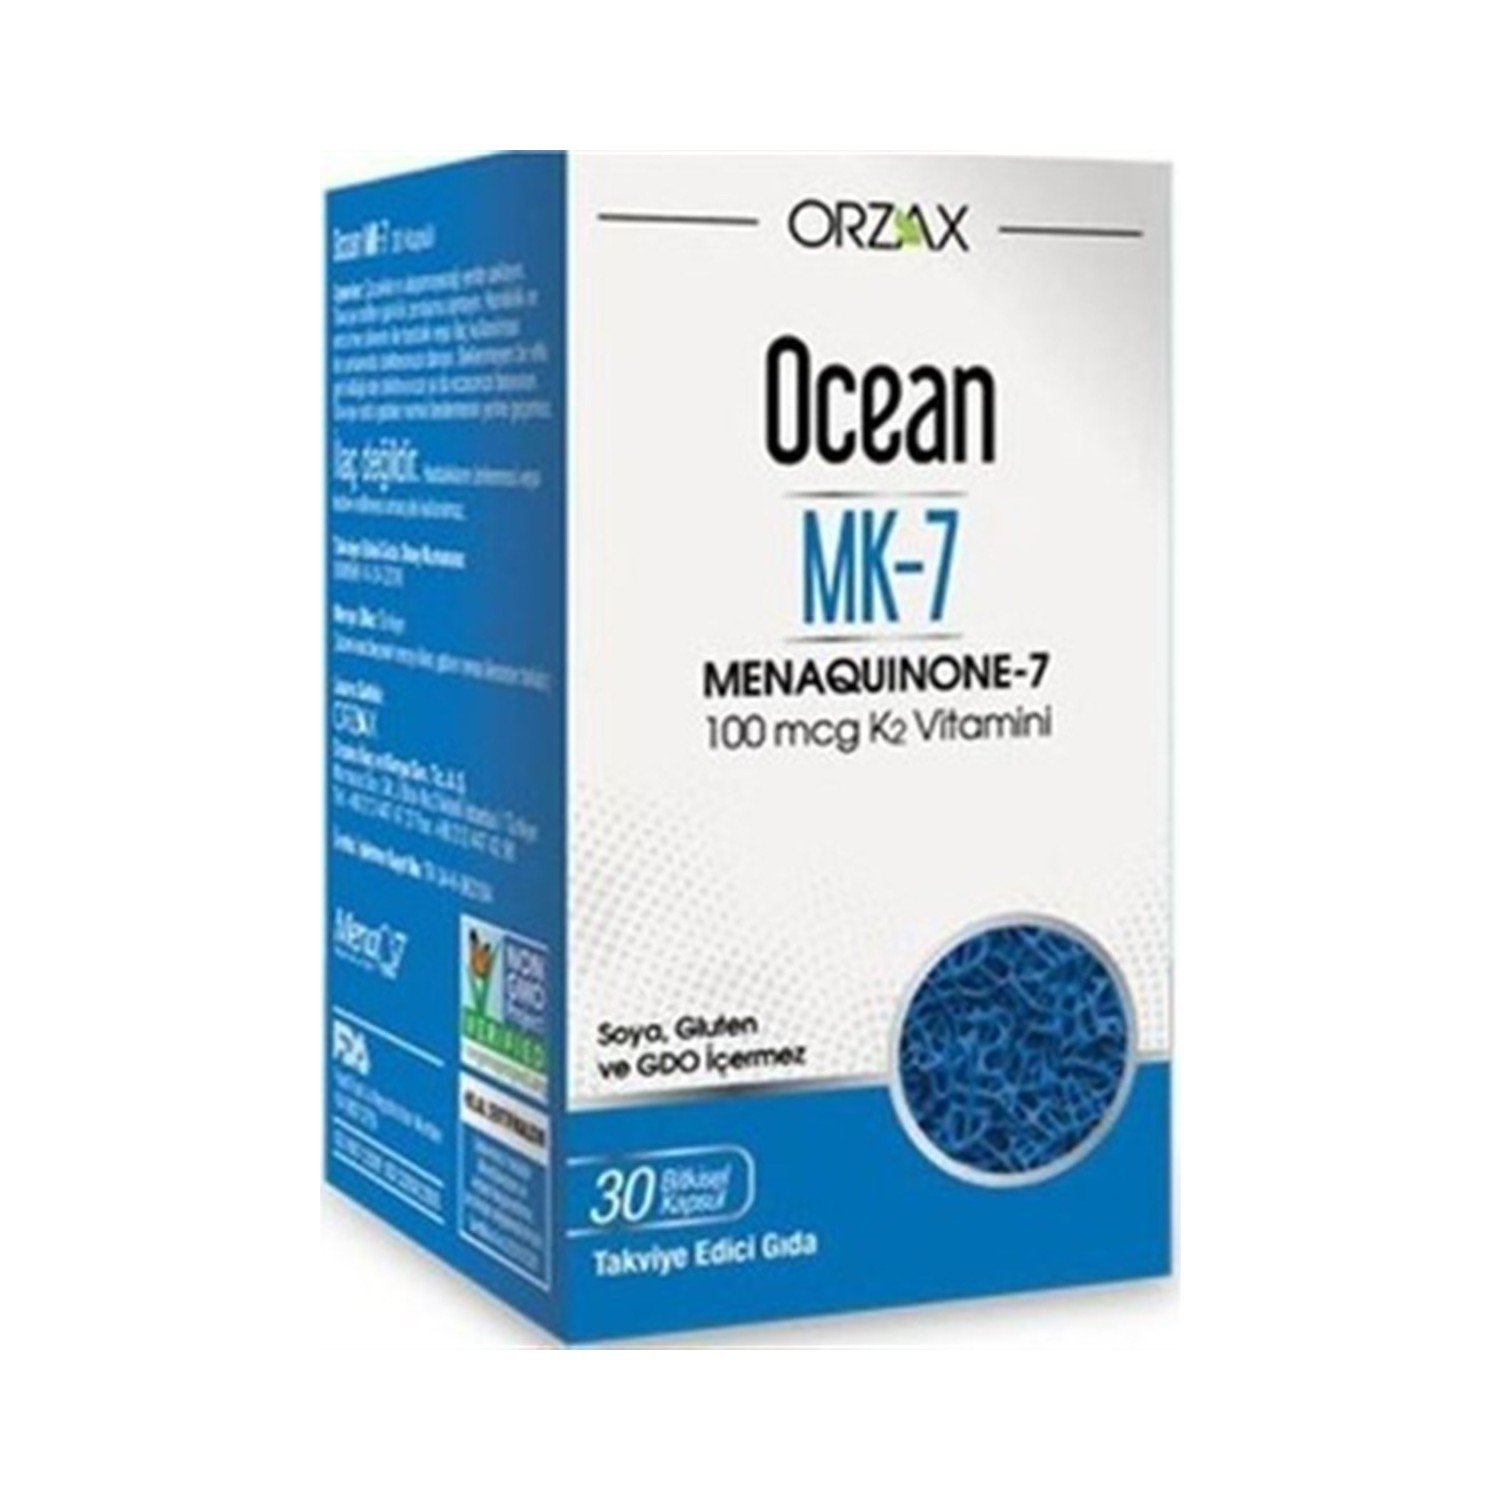 Менахинон-7 Ocean Orzax, 30 капсул селен orzax ocean 100 мкг 2 упаковки по 30 таблеток